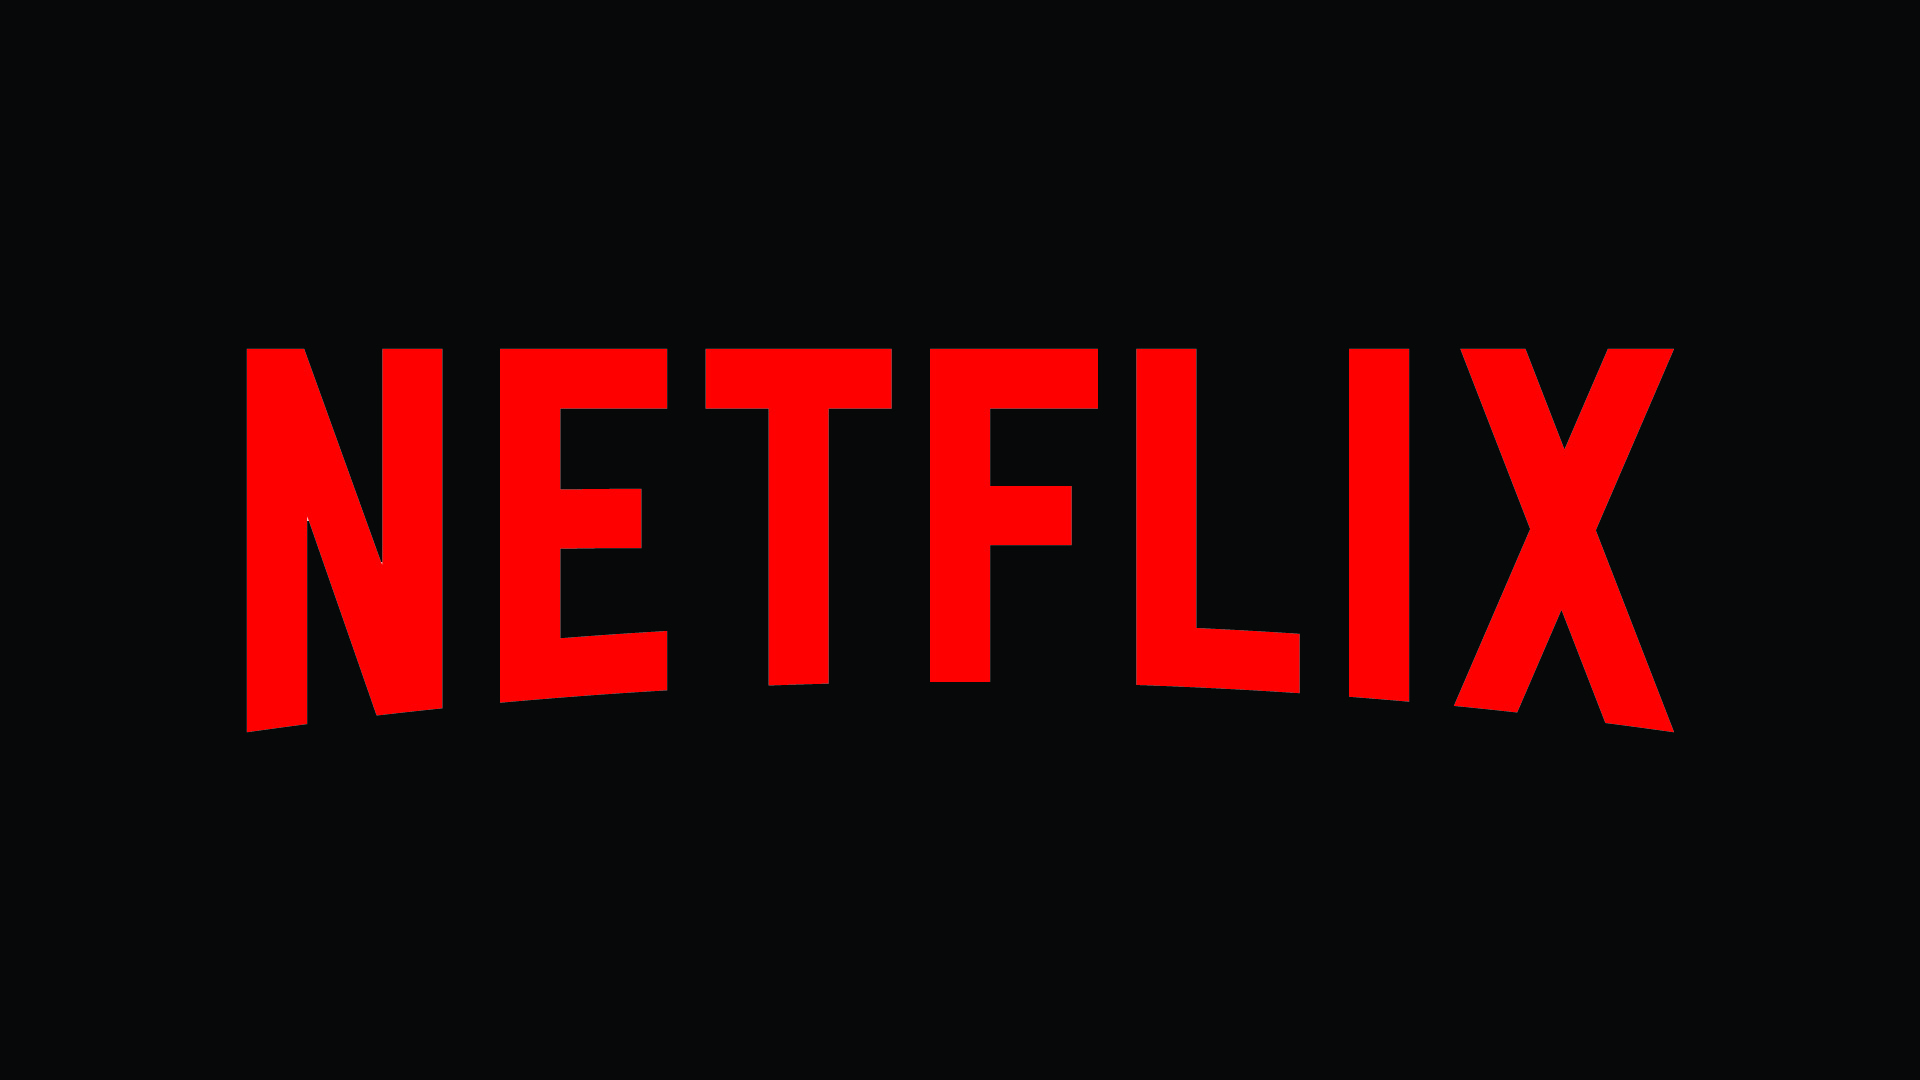 Netflix Direct: Netflix tester lineær-TV